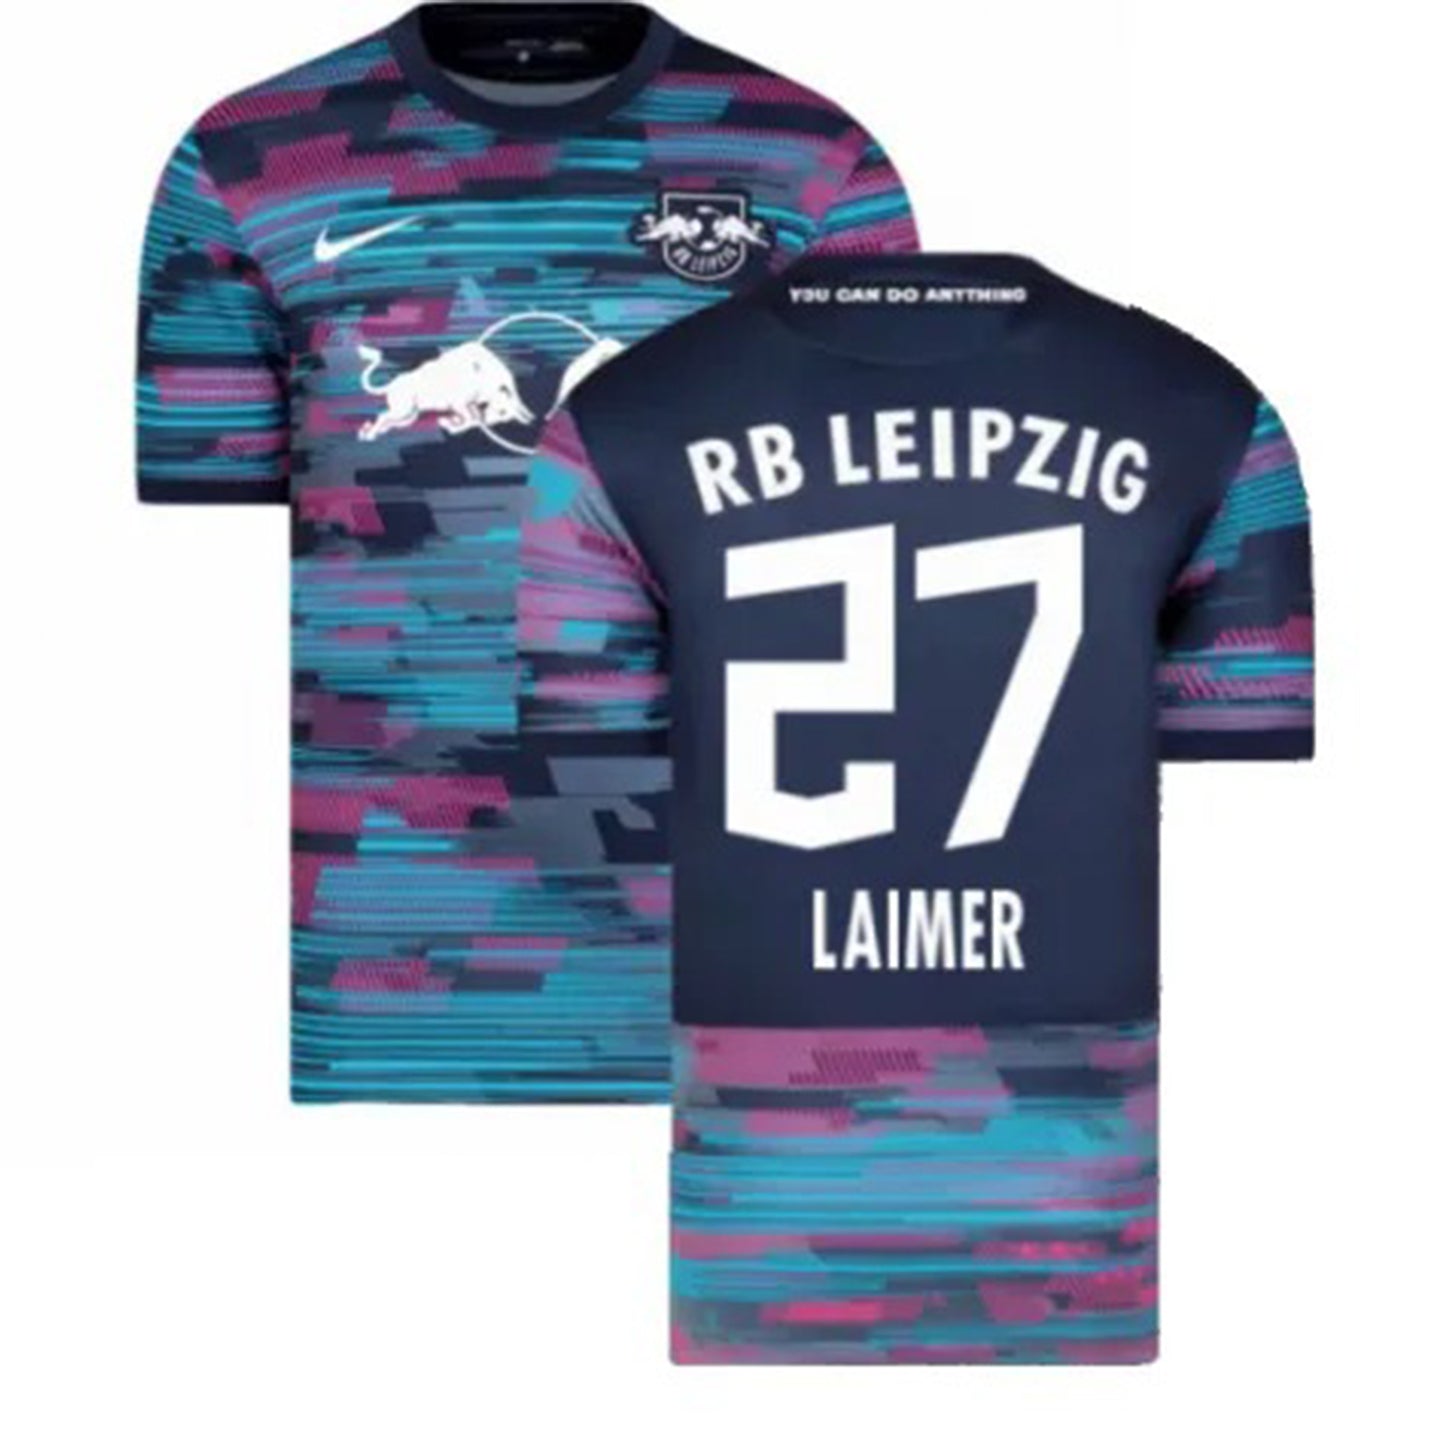 Konrad Laimer RB Leipzig 27 Jersey